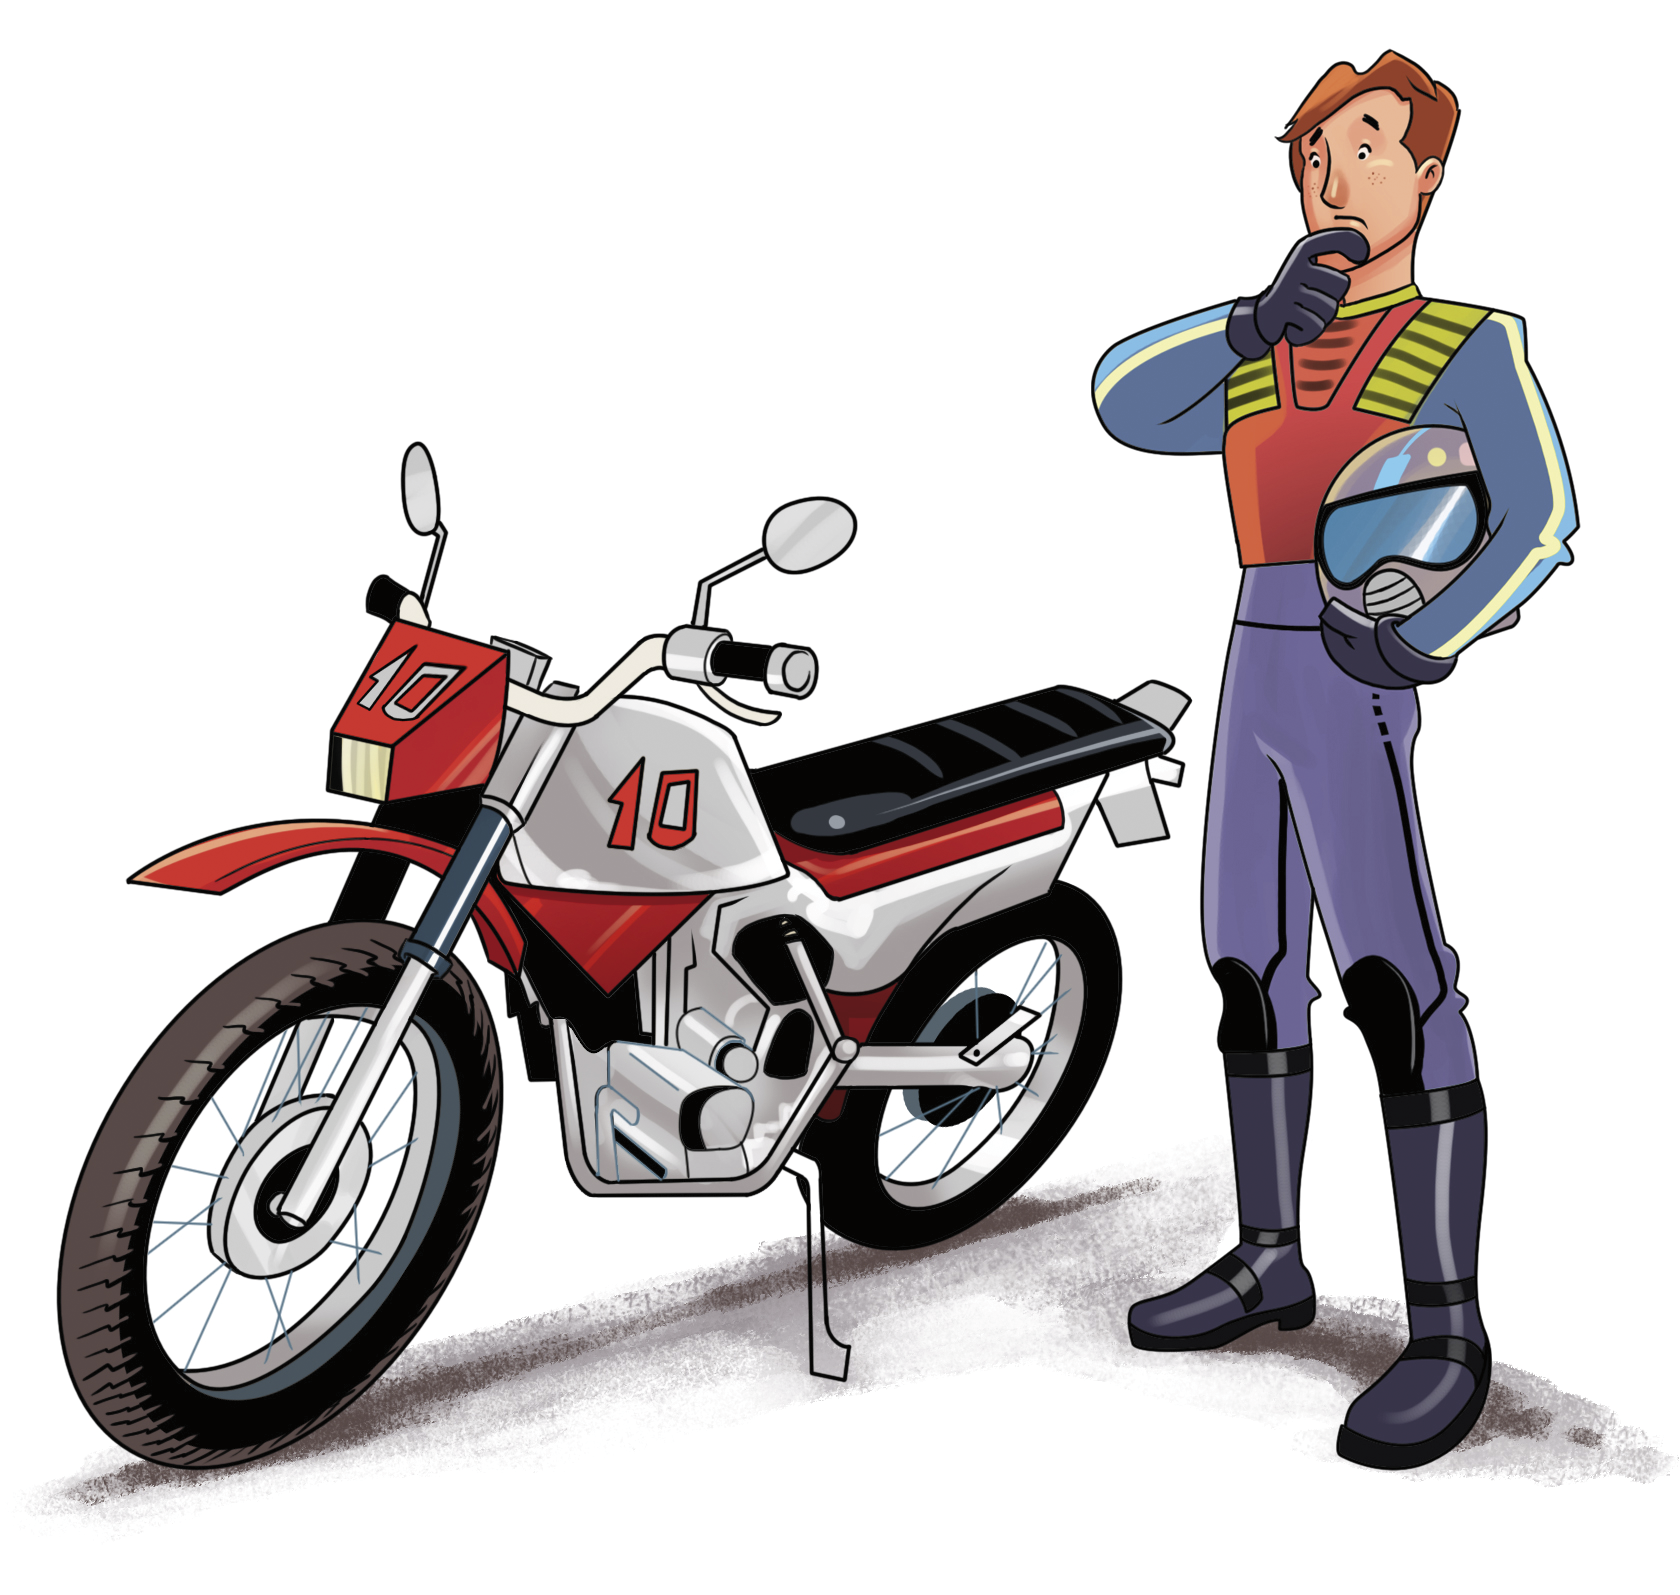 Ilustração. Homem de cabelo castanho, jaqueta, calça e botas. Ele está em pé segurando um capacete ao lado de uma moto vermelha.